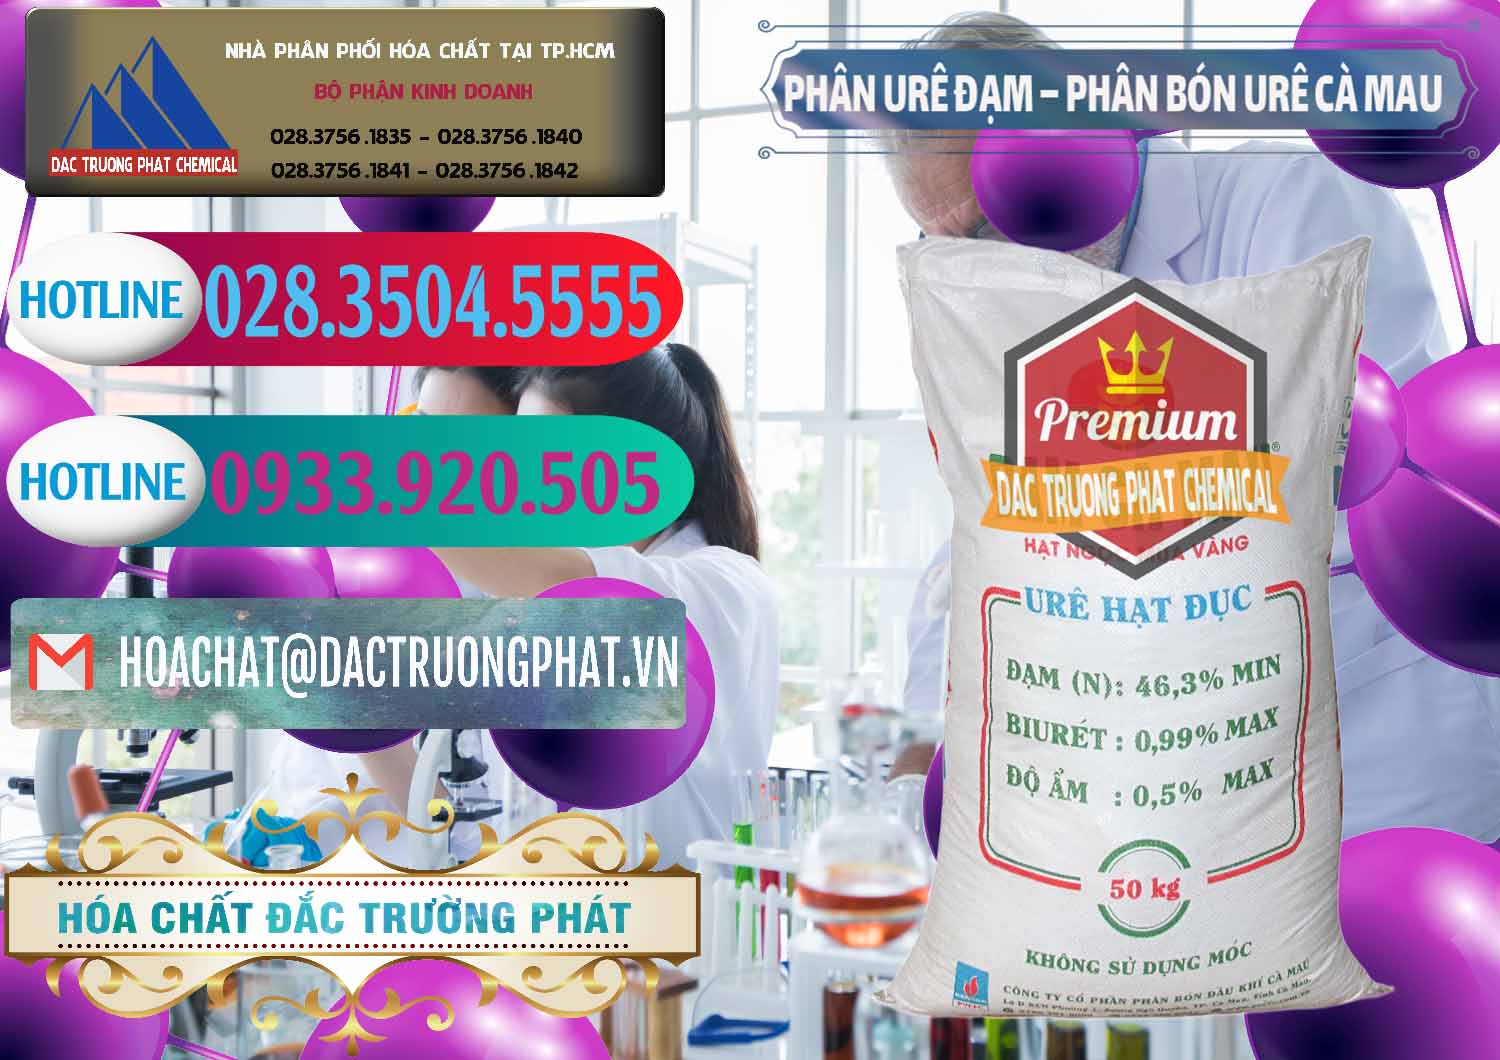 Chuyên kinh doanh & bán Phân Urê Đạm – Phân Bón Urê Cà Mau Việt Nam - 0192 - Đơn vị chuyên cung cấp & bán hóa chất tại TP.HCM - truongphat.vn